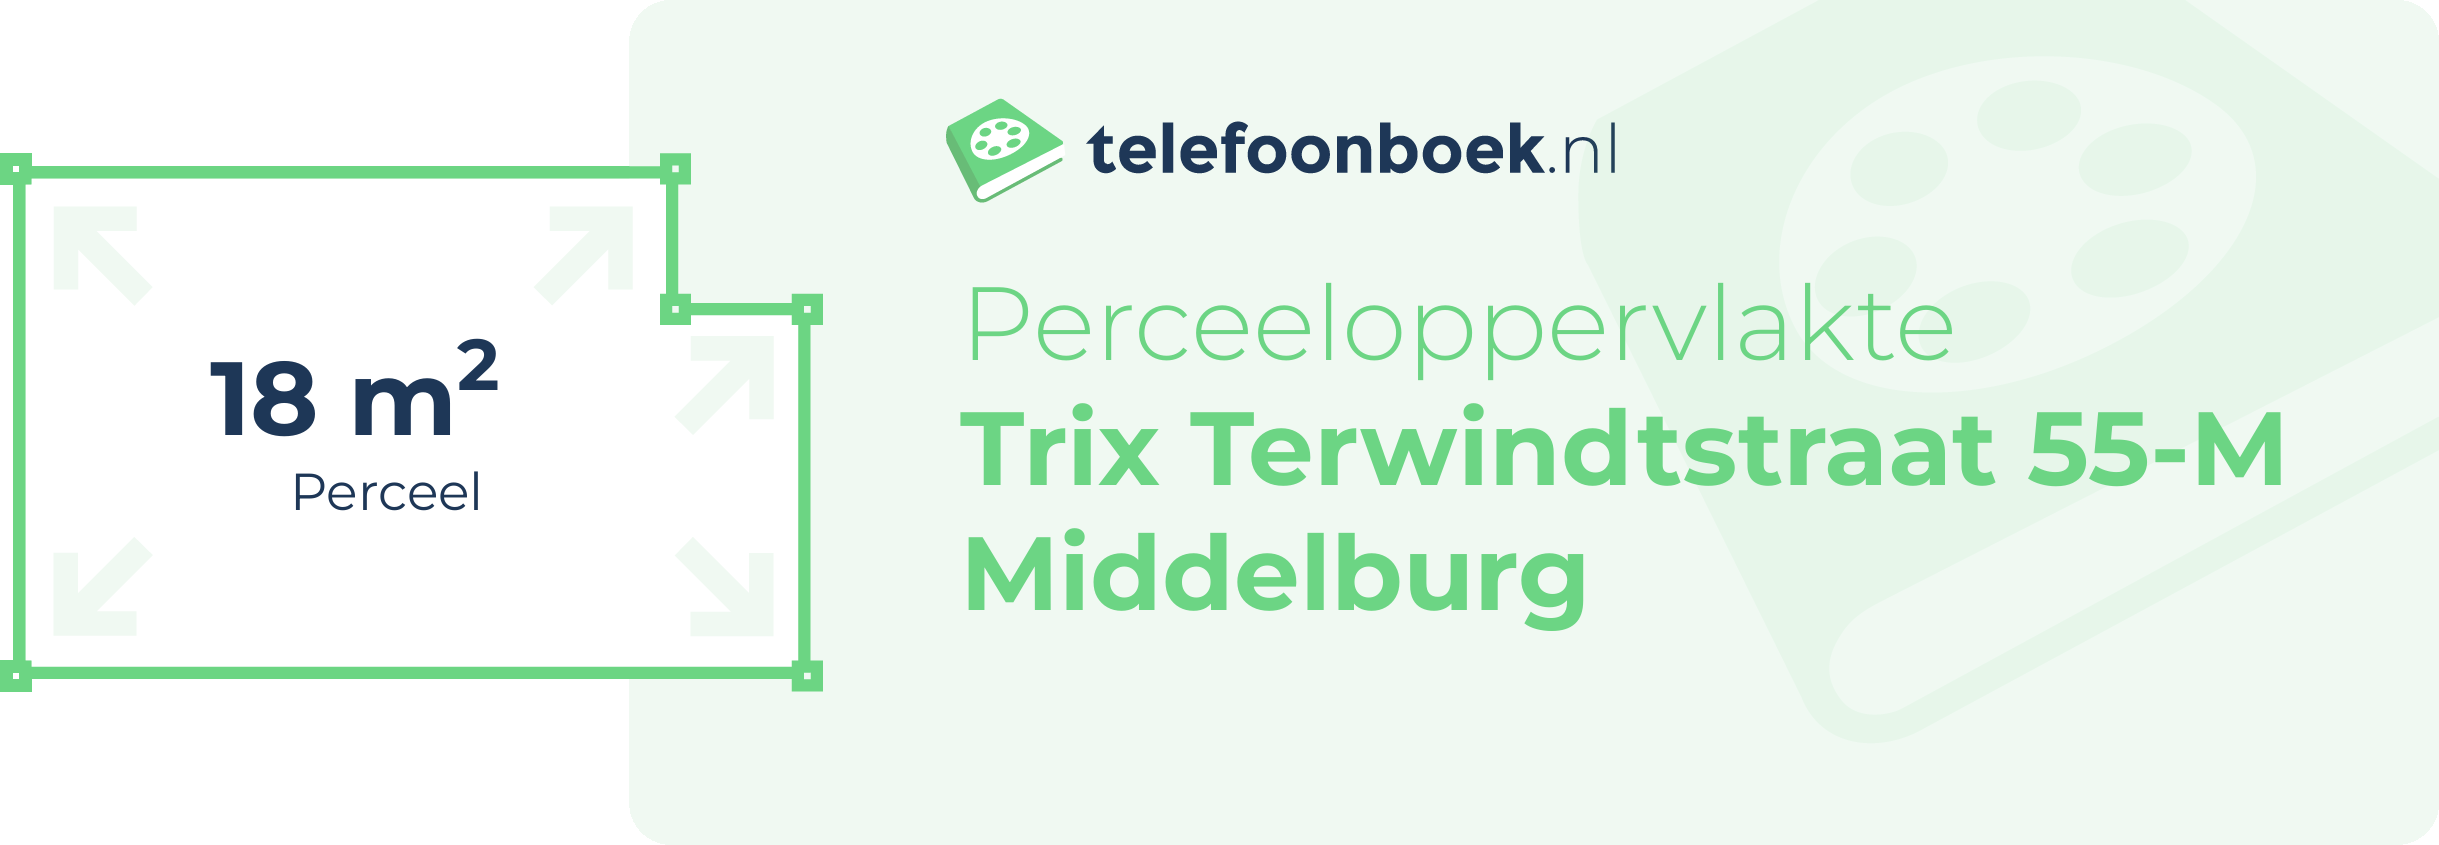 Perceeloppervlakte Trix Terwindtstraat 55-M Middelburg